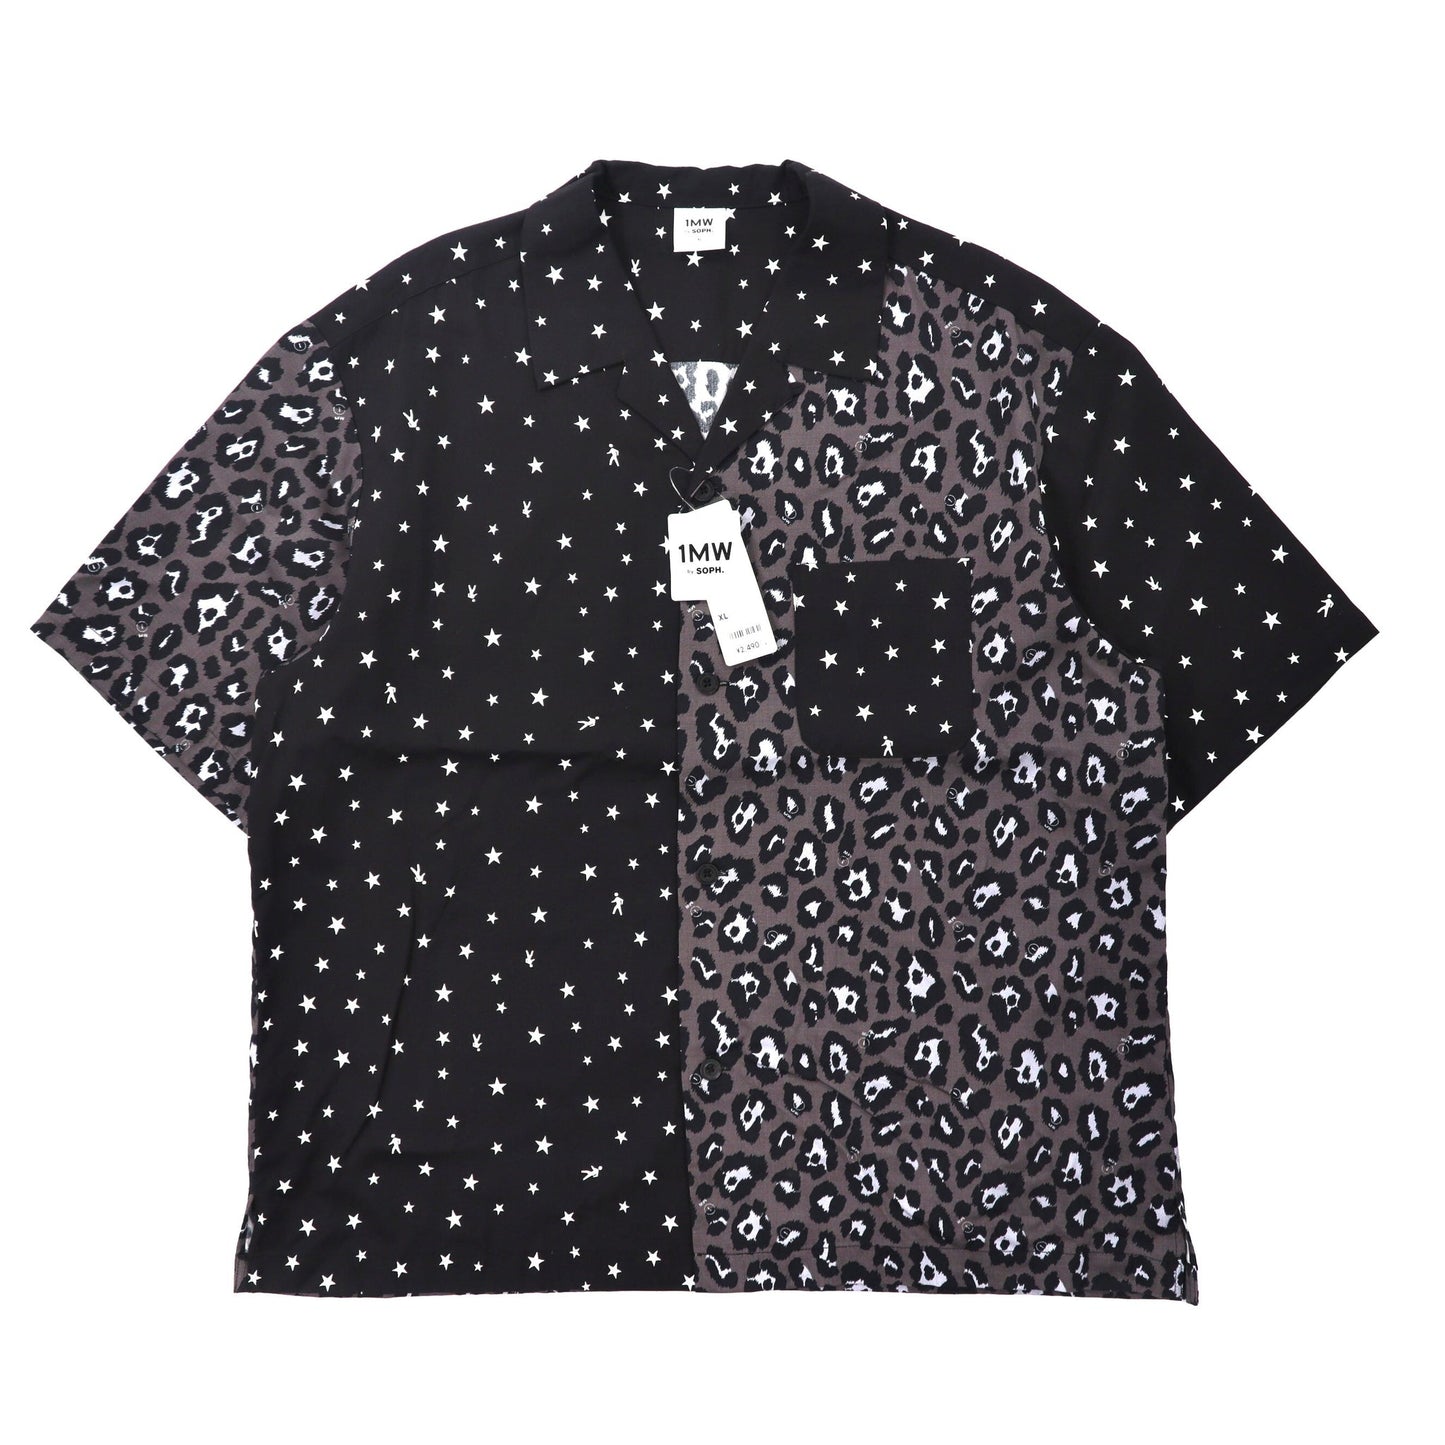 1MW by SOPH. オープンカラーシャツ XL ブラック レーヨン クレイジーパターン 未使用品-SOPH.-古着